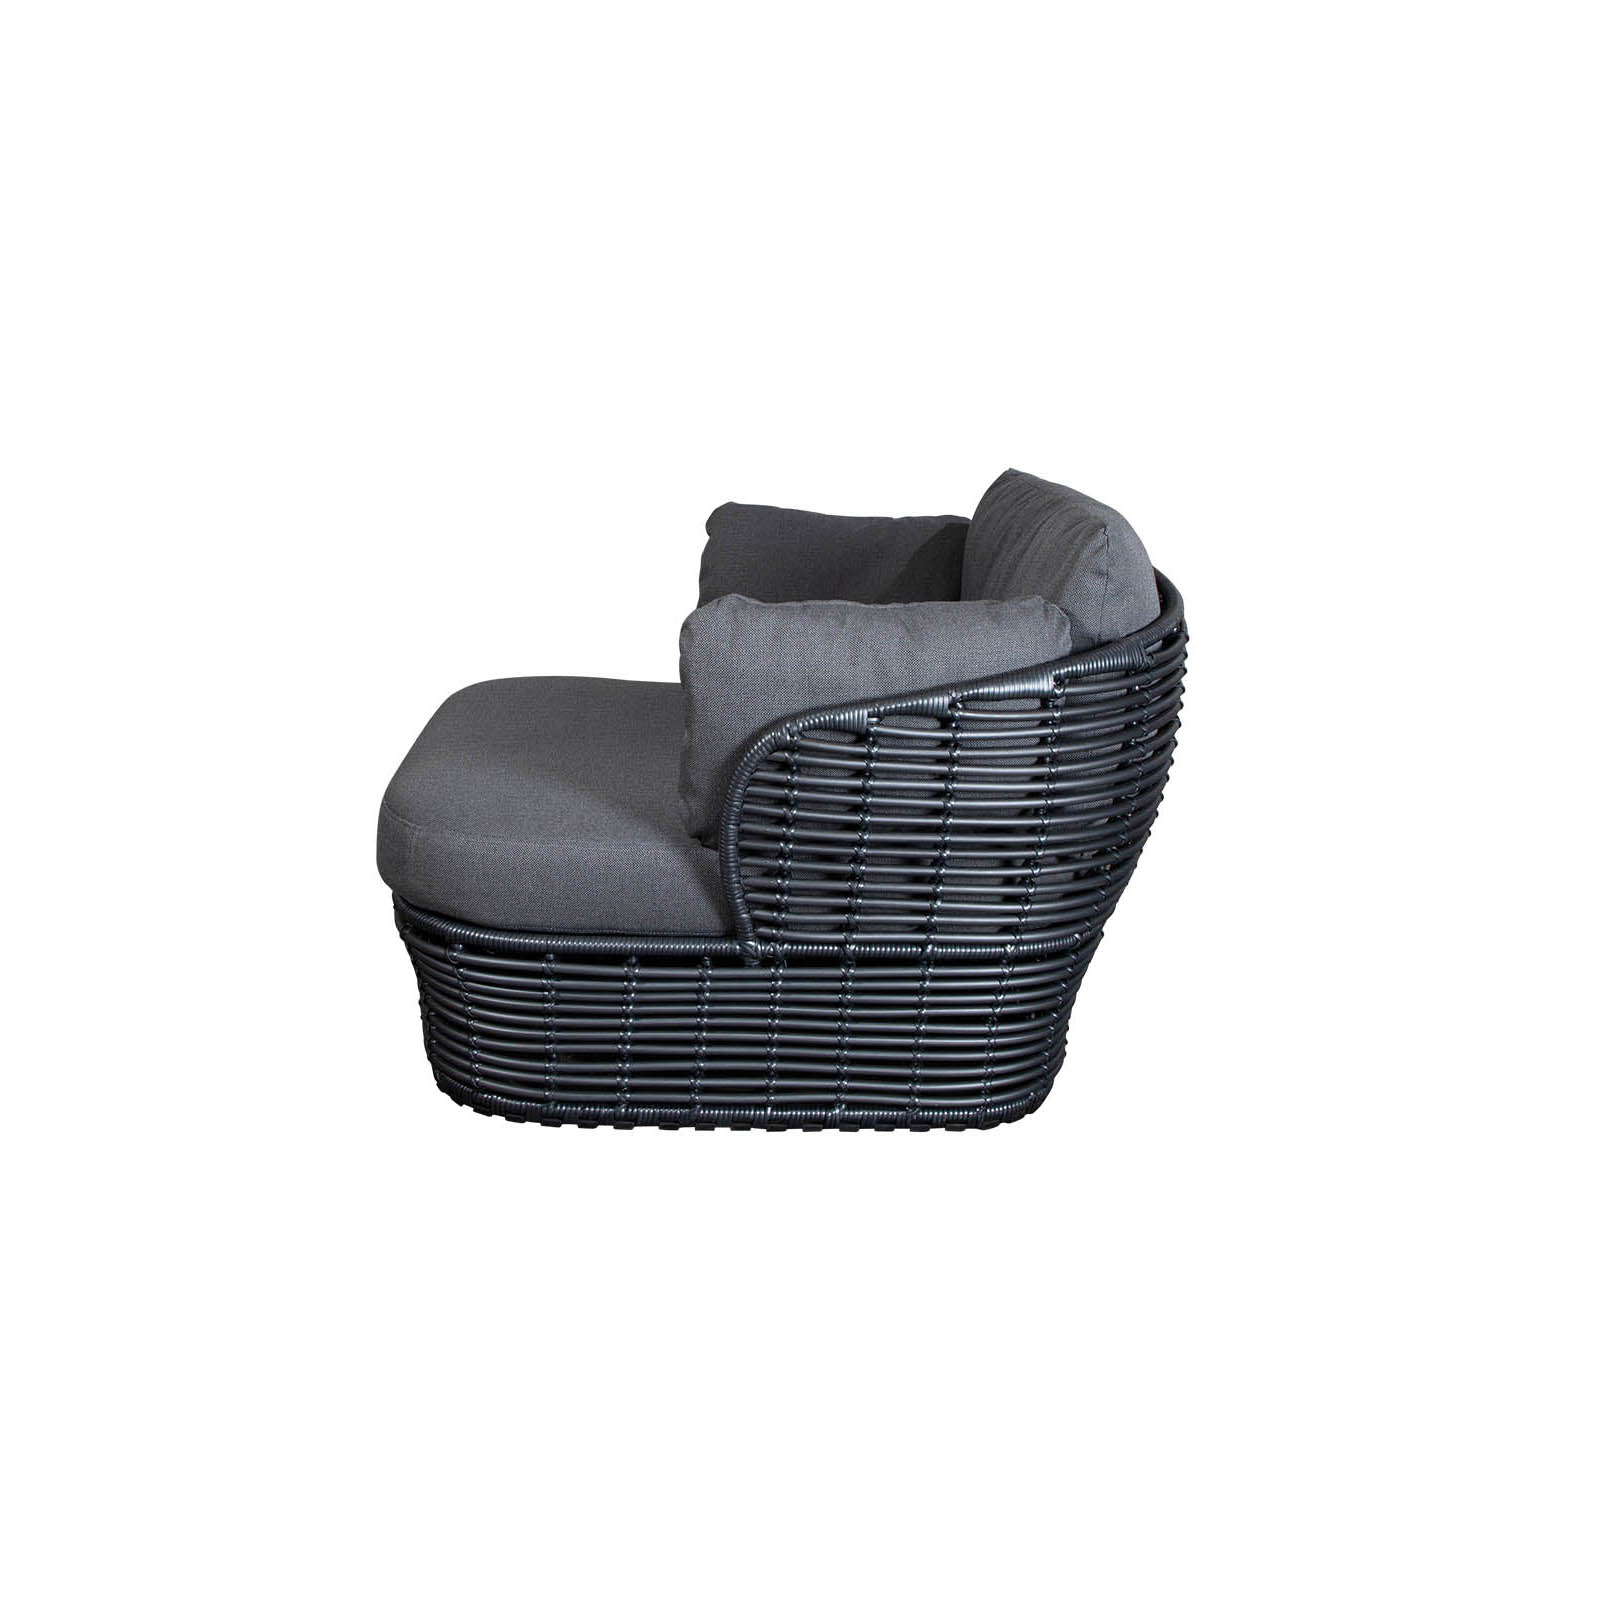 Basket Loungesessel aus Cane-line Weave in Graphite mit Kissen aus Cane-line AirTouch